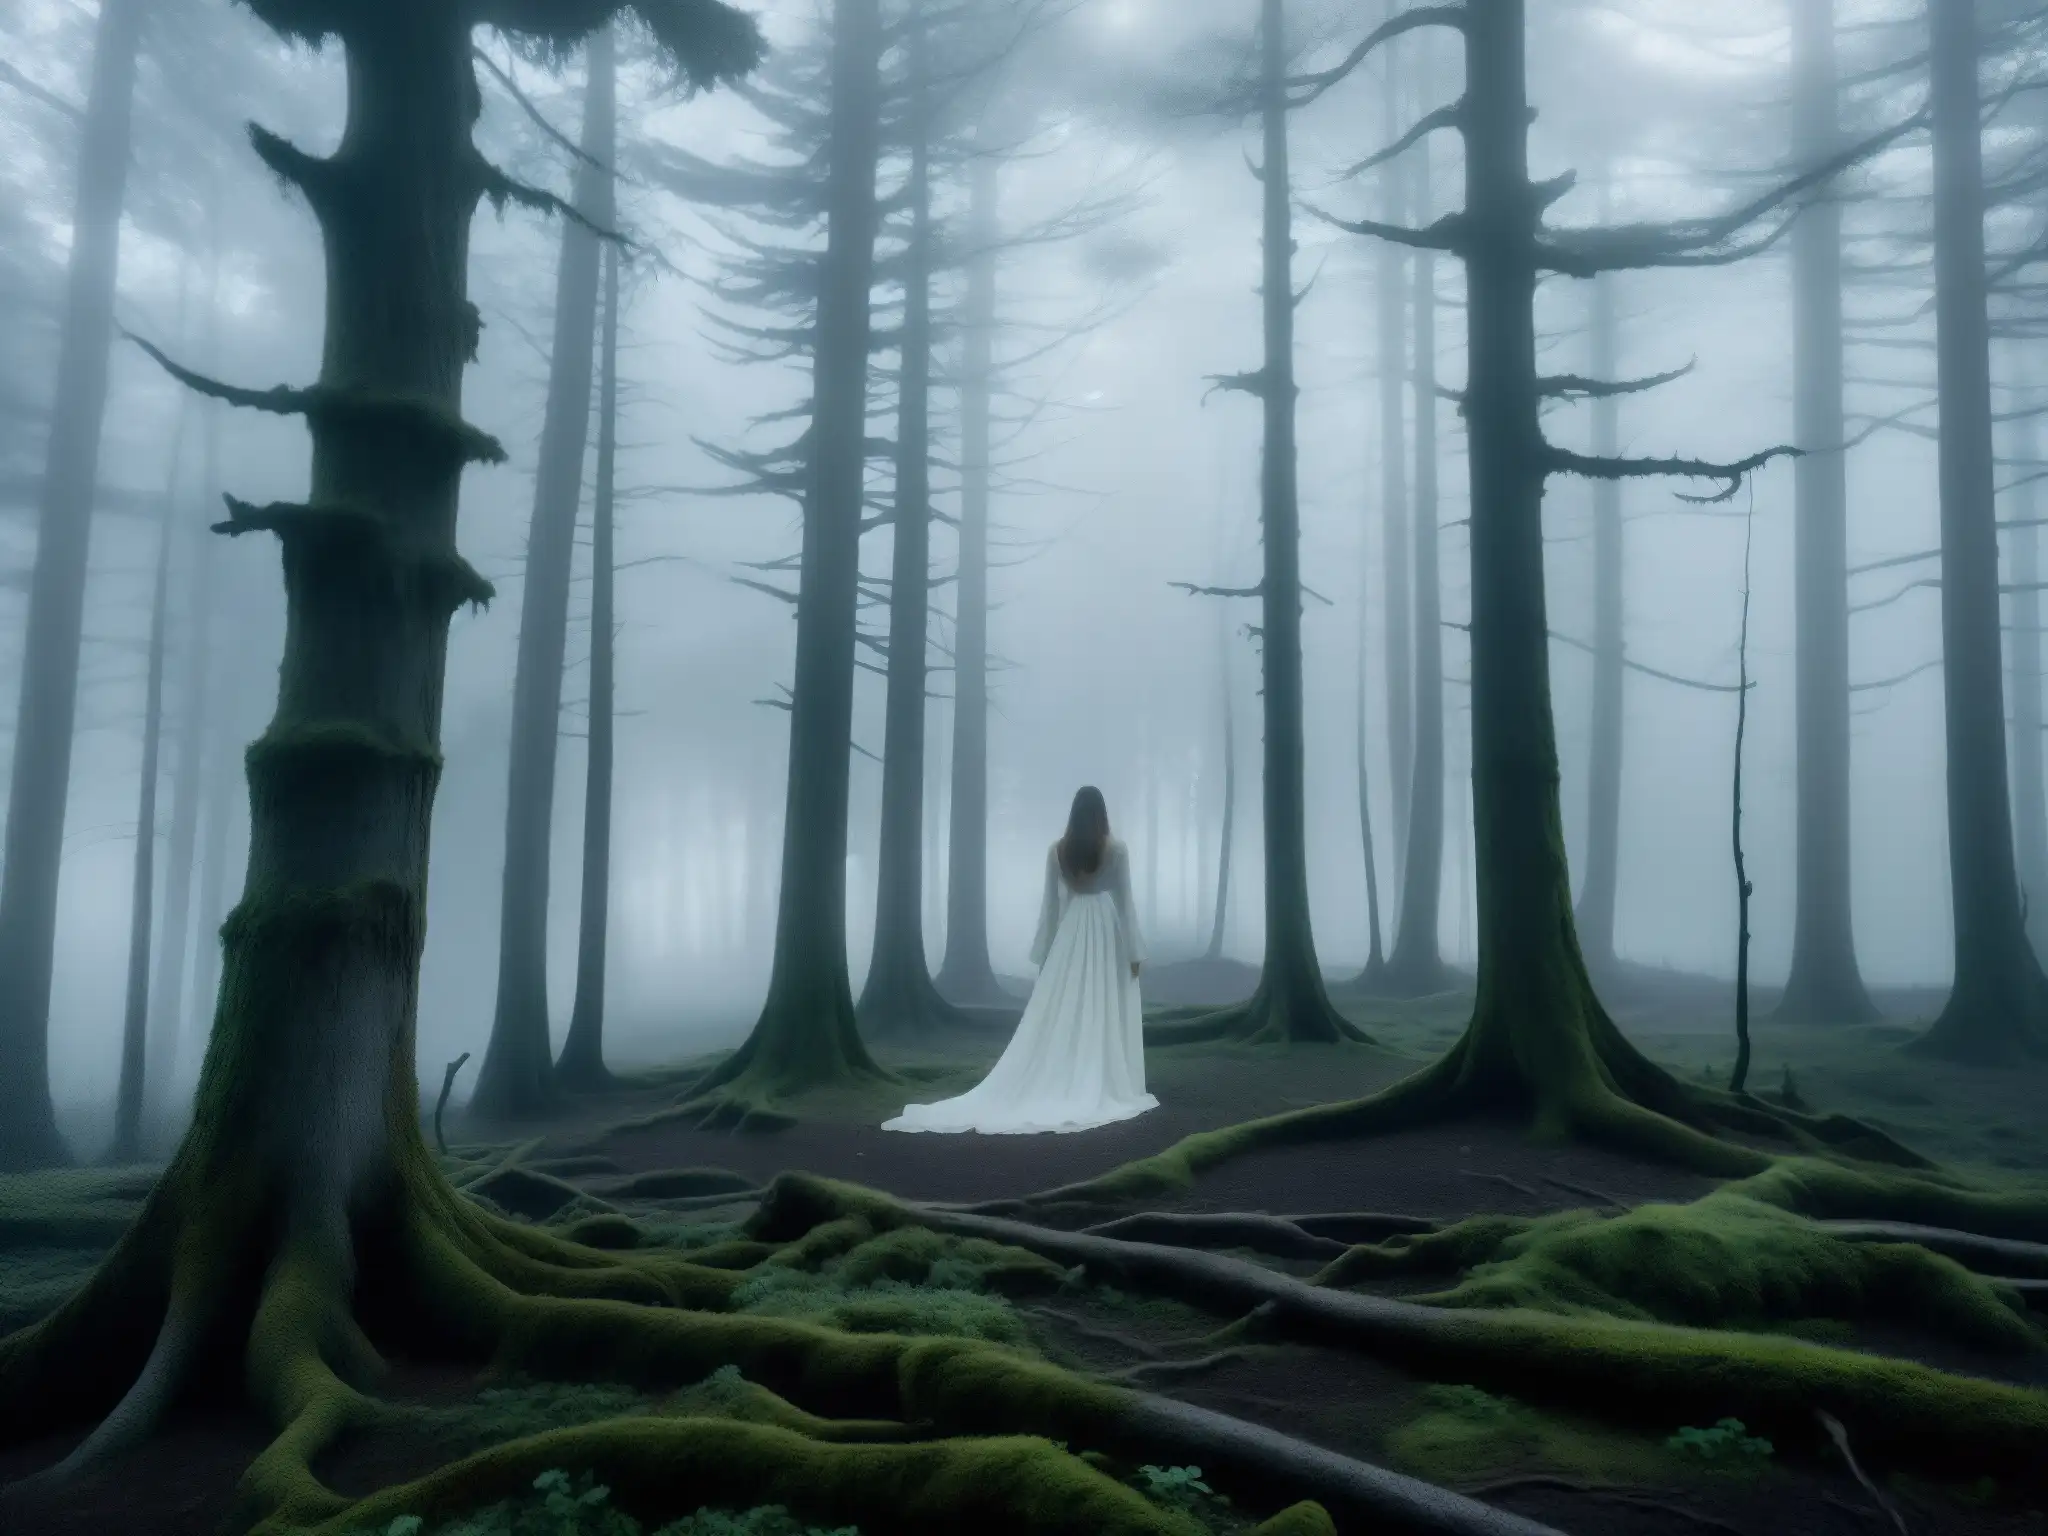 En un bosque brumoso al atardecer, aparece la Dama de Blanco, evocando misterio y leyendas de su aparición sobrenatural